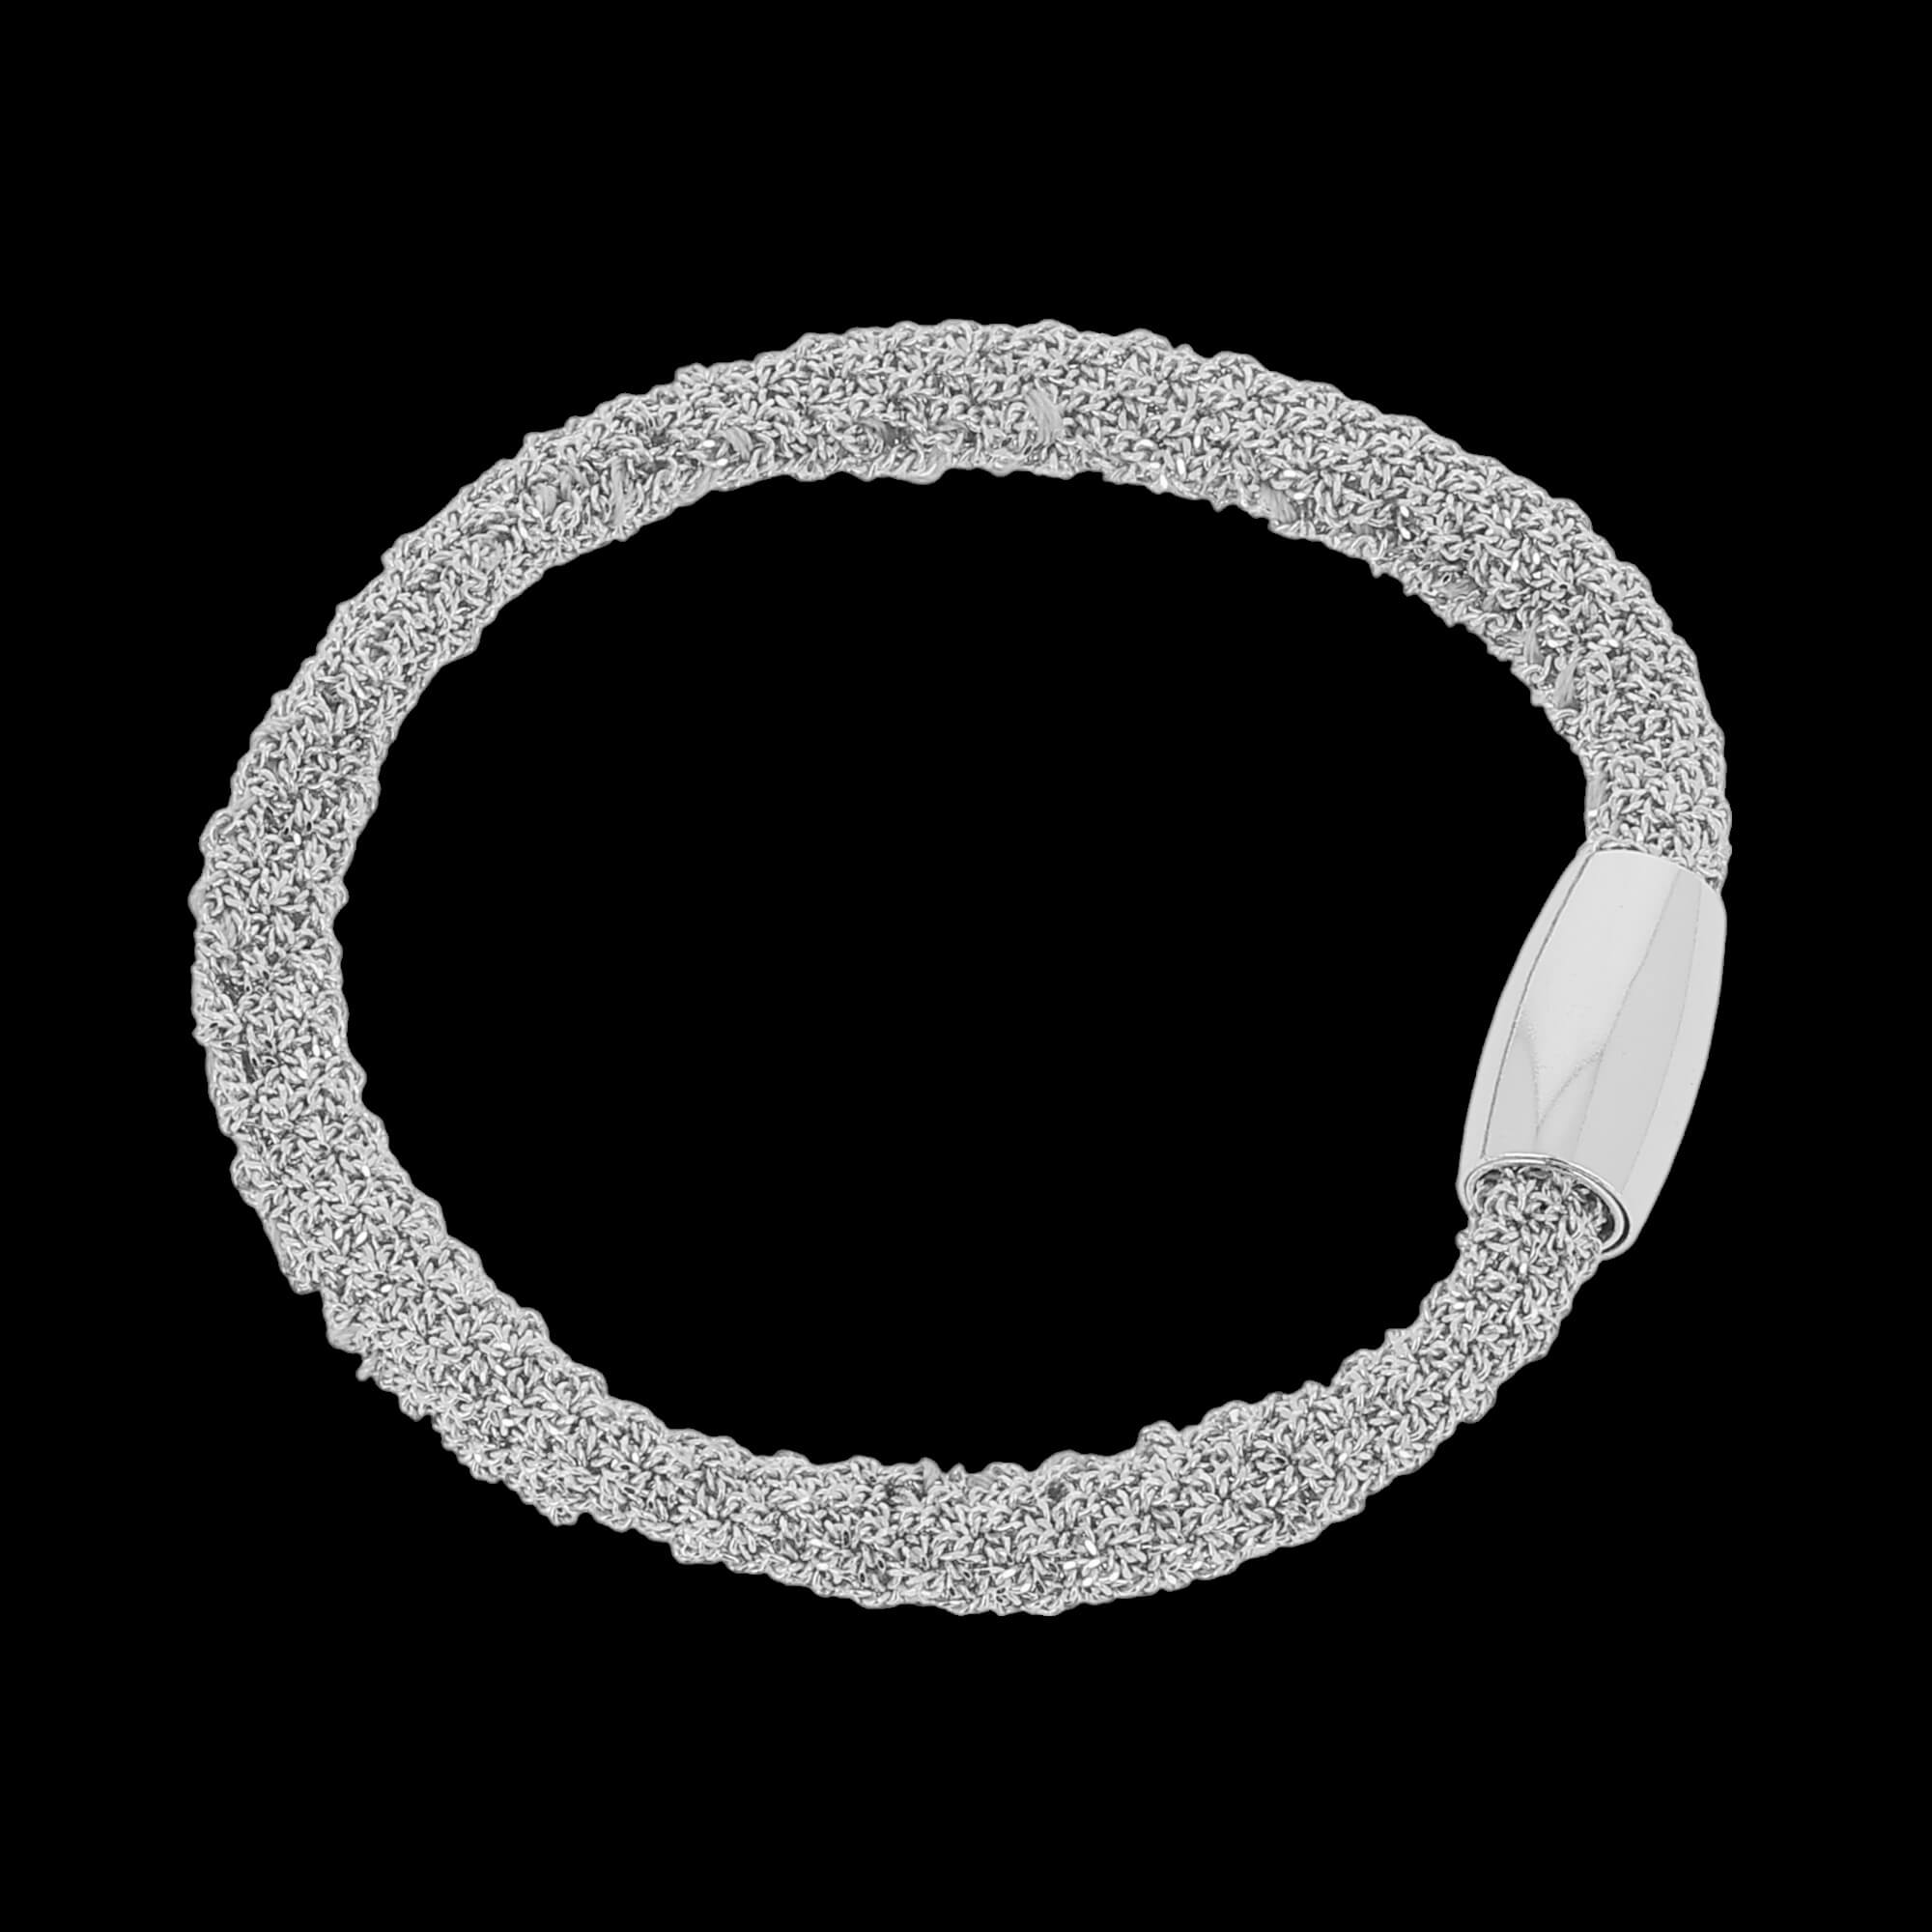 Narrow silver interwoven bracelet/heavier